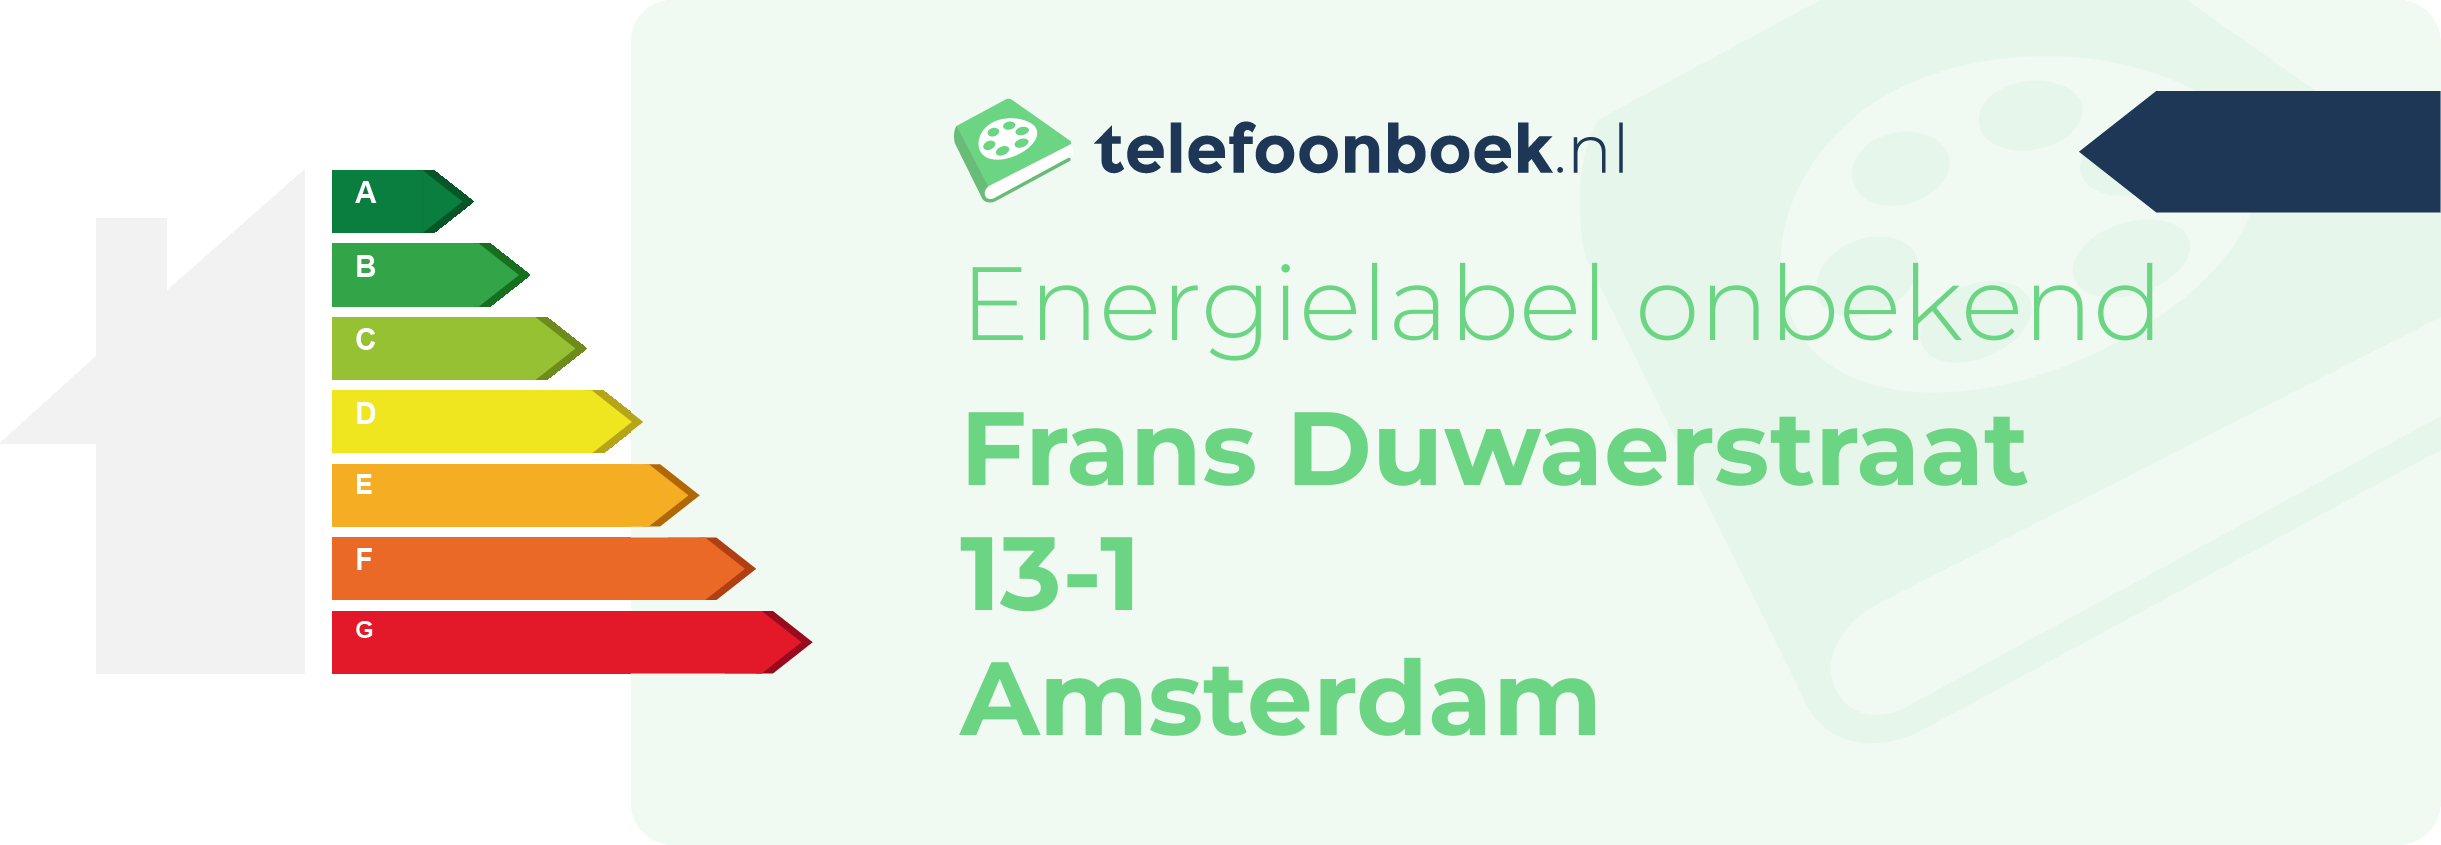 Energielabel Frans Duwaerstraat 13-1 Amsterdam